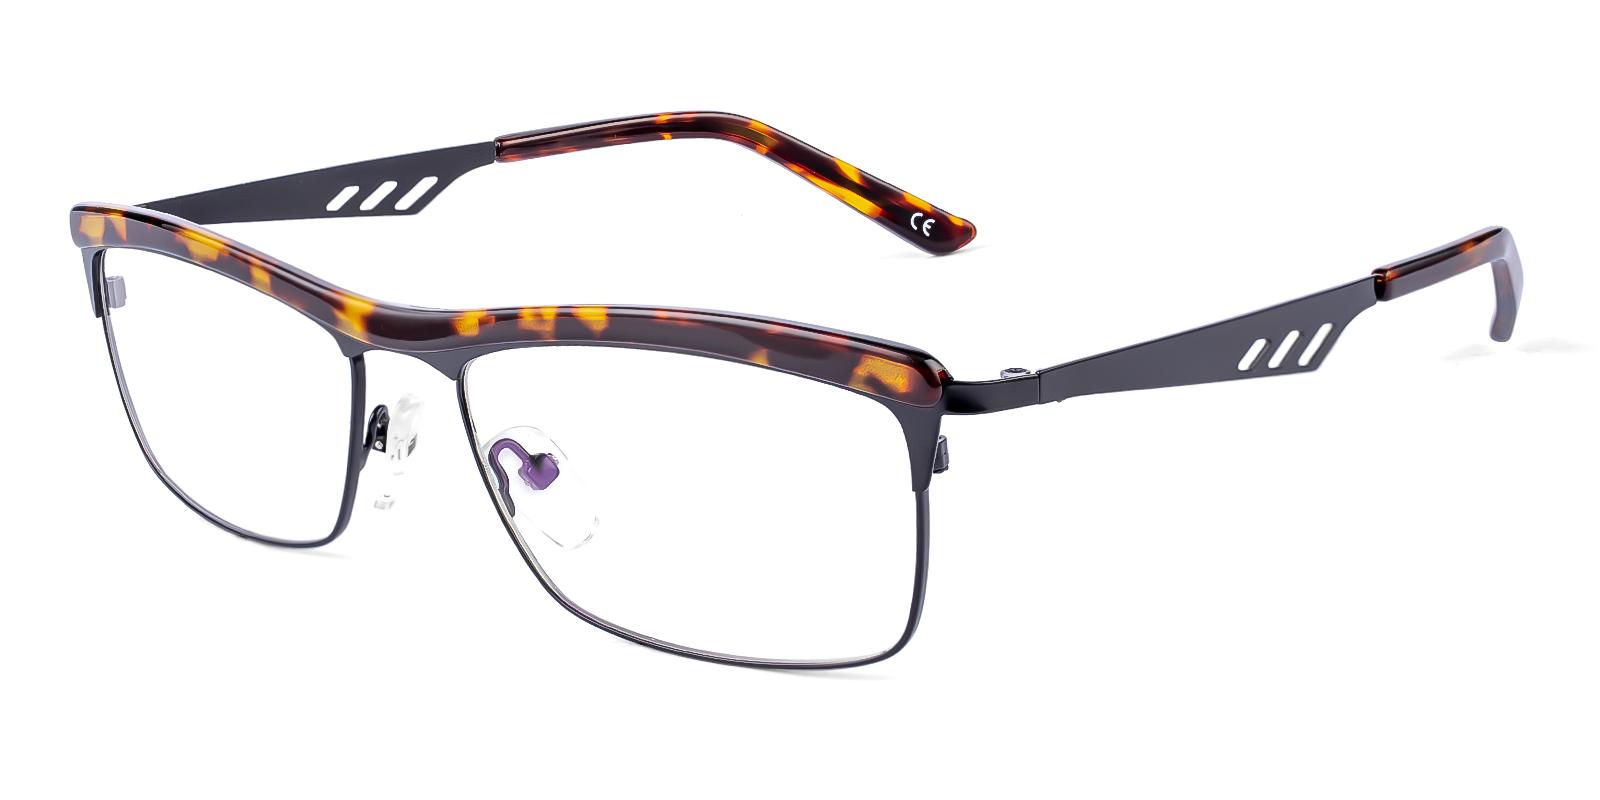 Juvad Tortoise Metal , TR Eyeglasses , NosePads Frames from ABBE Glasses